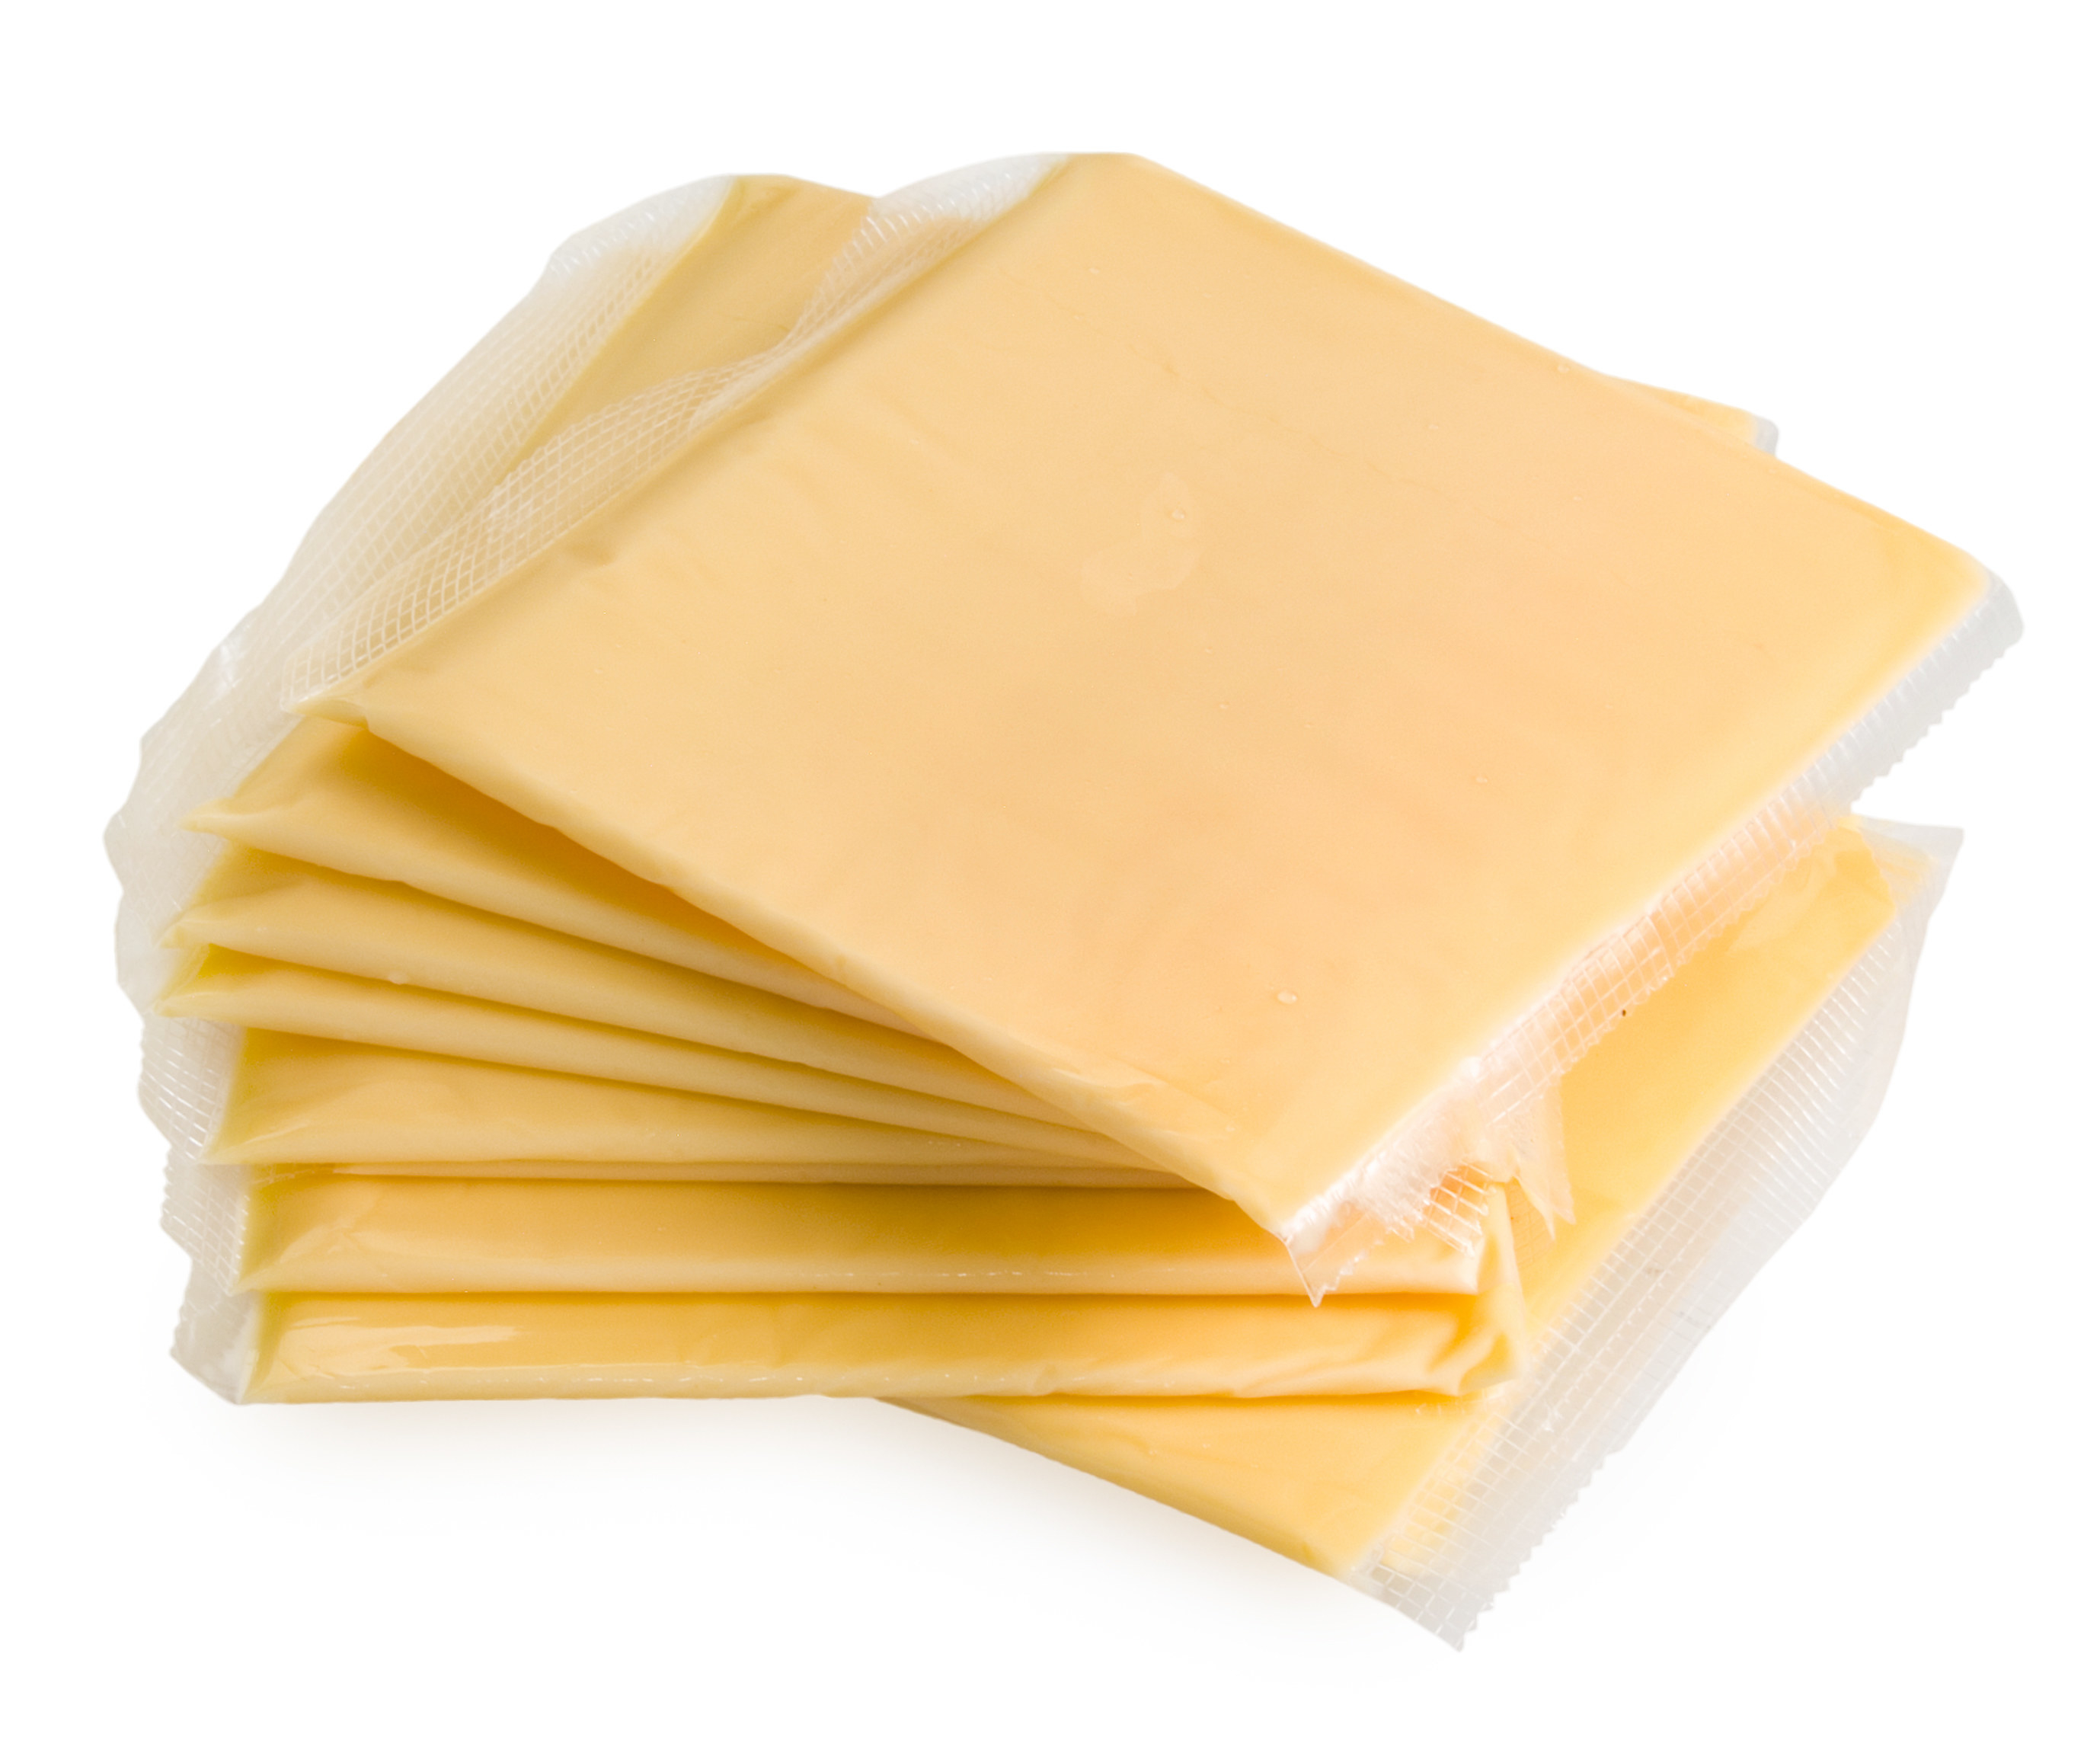 фото плавленного сыра в упаковке